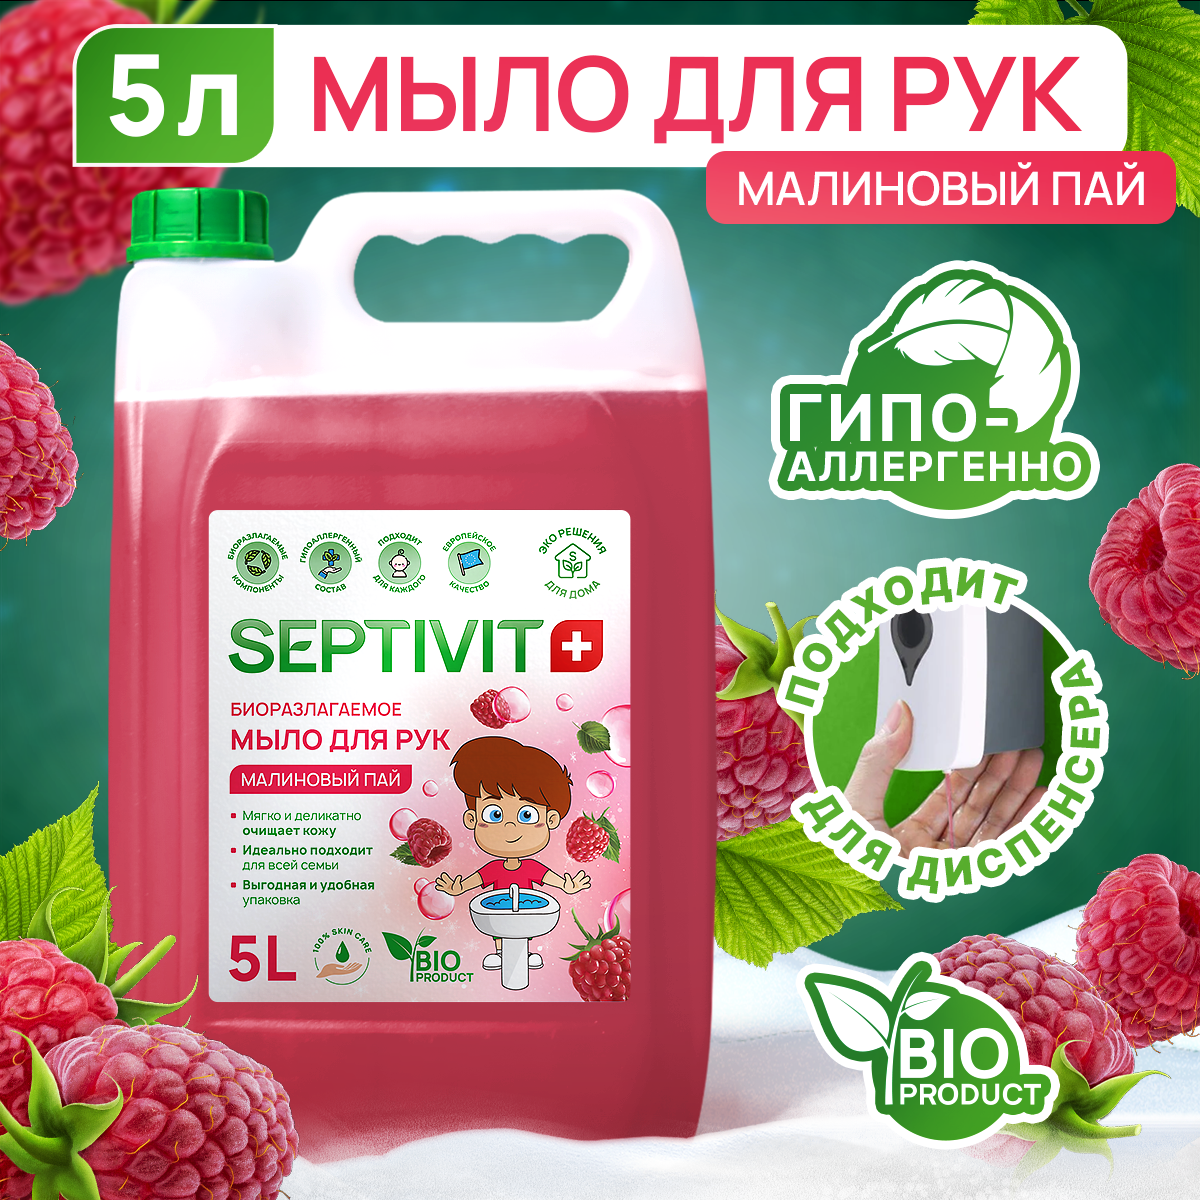 Жидкое мыло для рук Septivit Premium Малиновый пай 5л